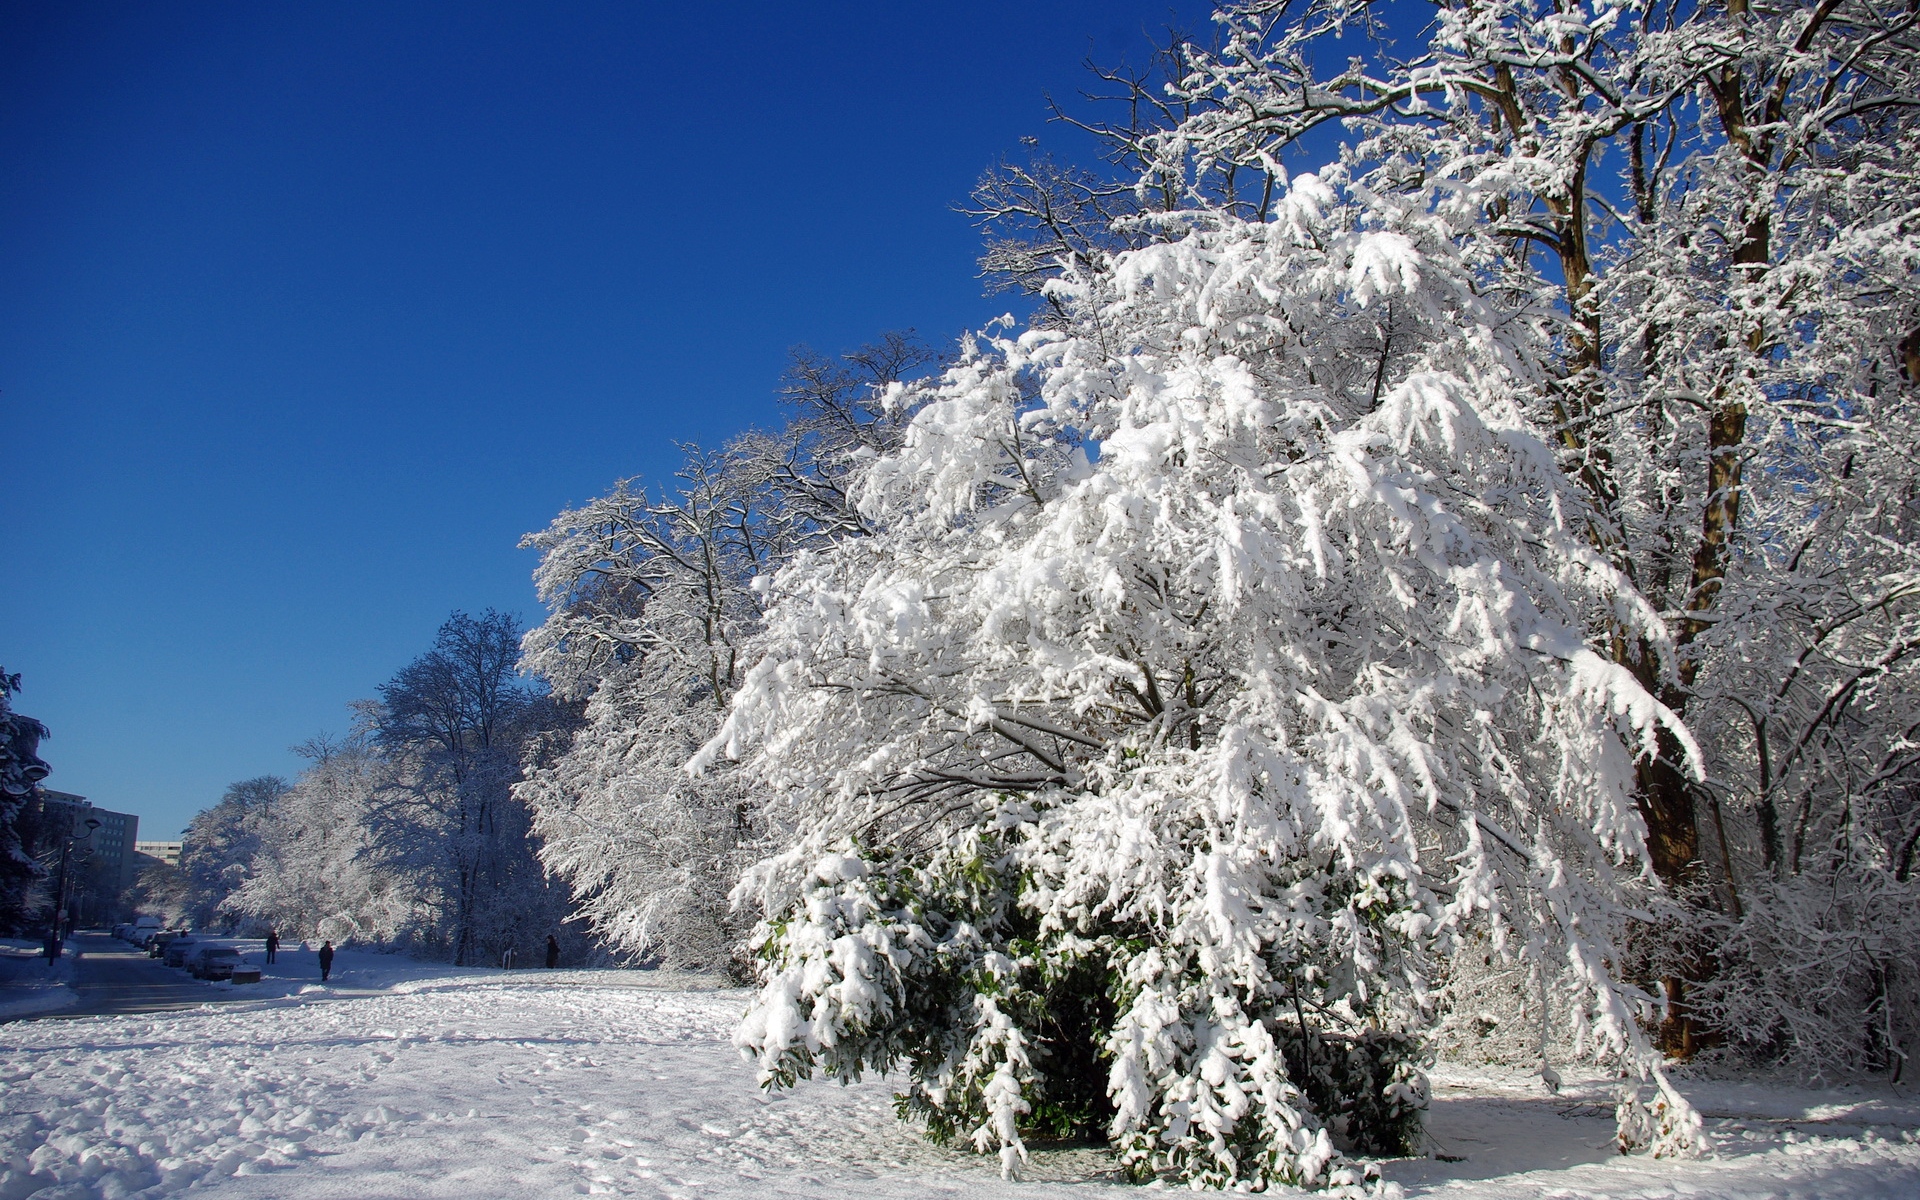 Картинки Франция, velizi-vilakubl, деревья, иней, снег, зима, ясно фото и обои на рабочий стол